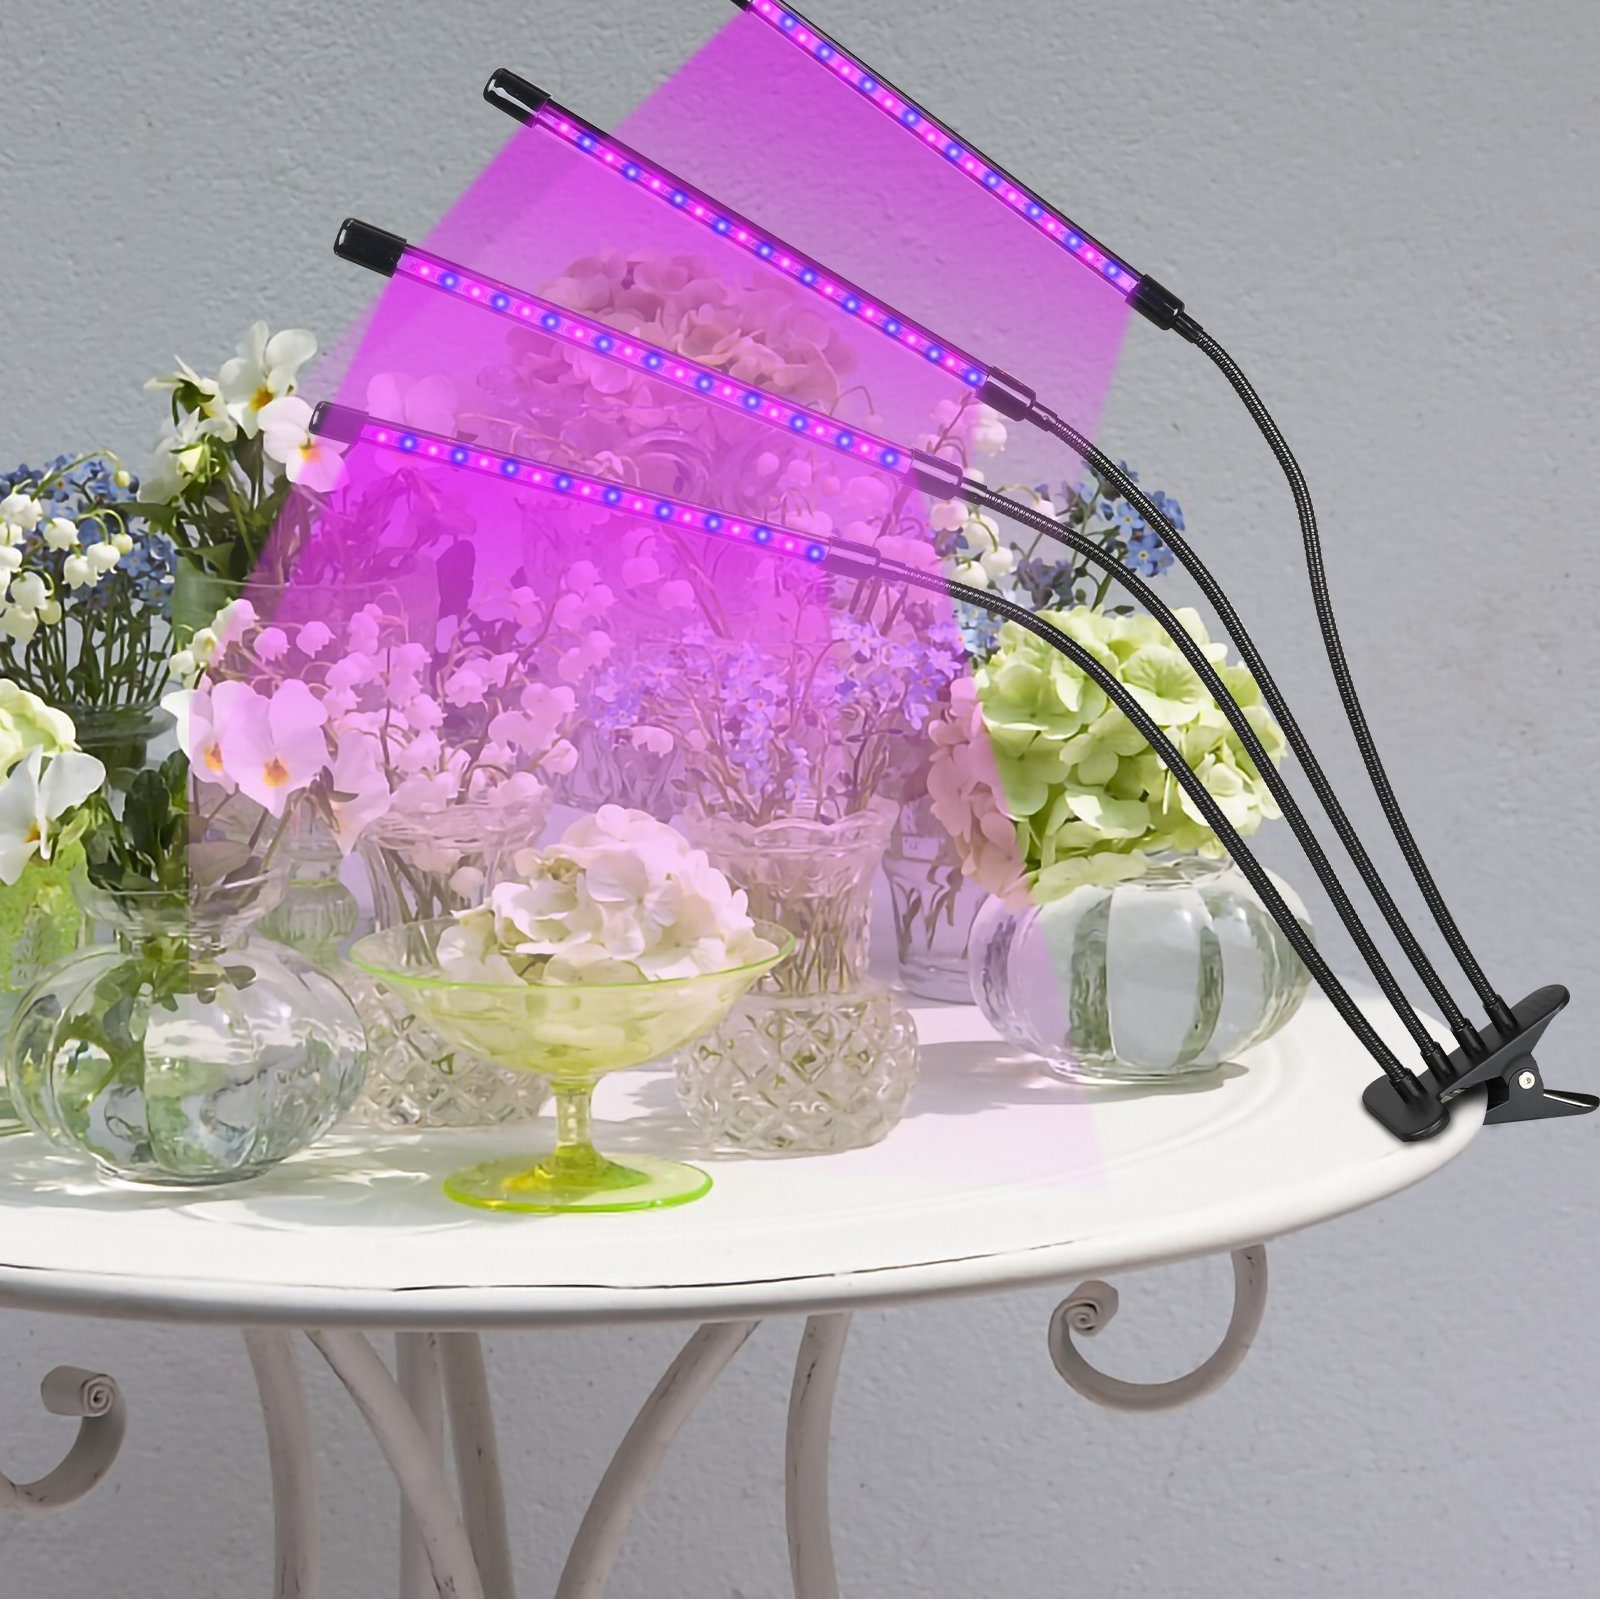 Gewächshaus LEDs TolleTour Zimmerpflanzen Pflanzenlicht 80 LED 4 Köpfe, Vollspektrum Gartenarbeit Pflanzenlampe